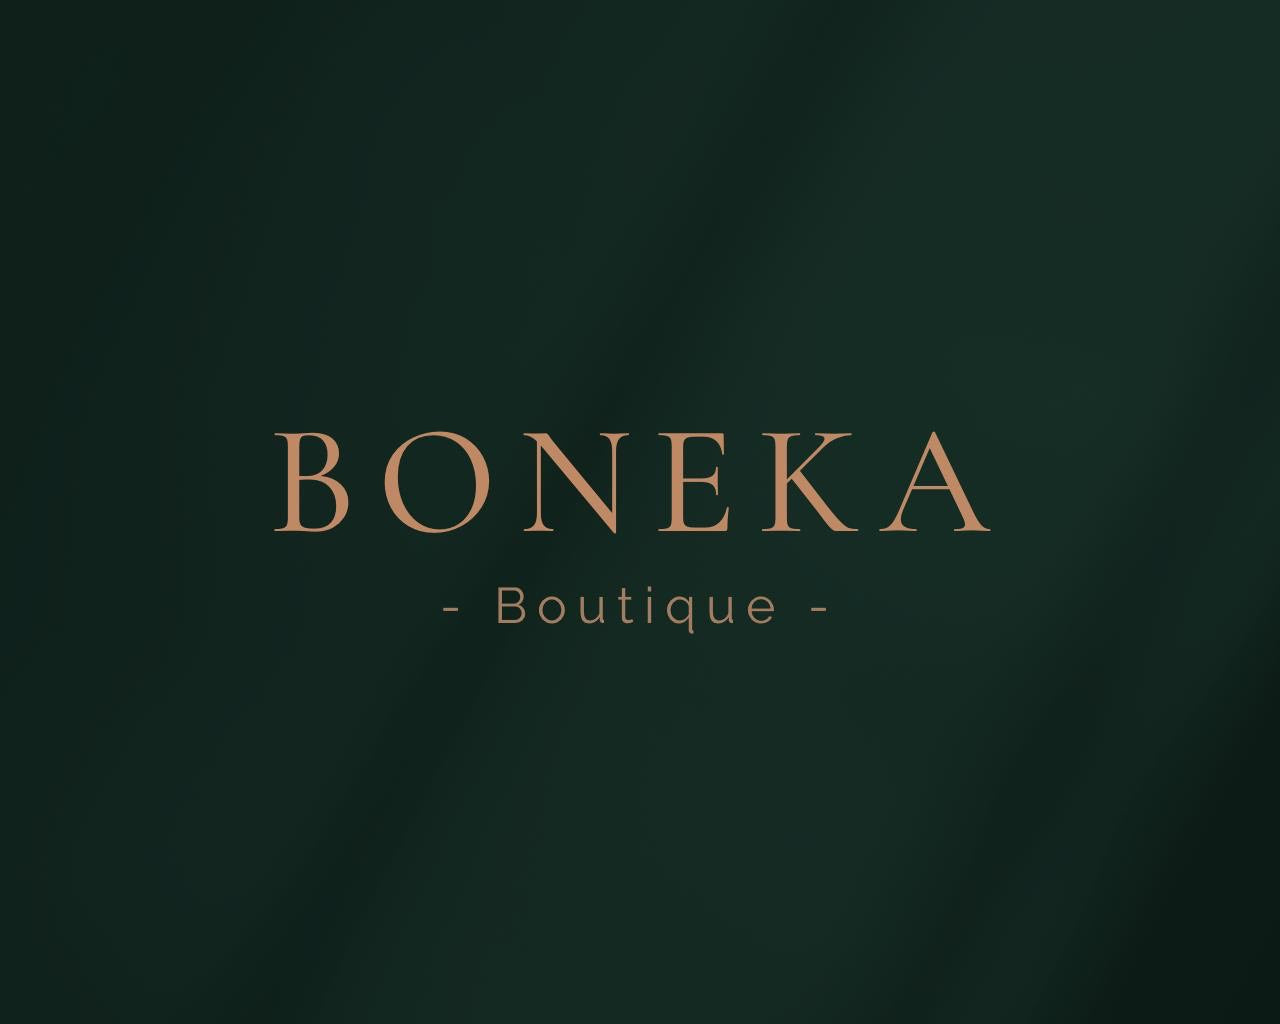 BoneKa Boutique